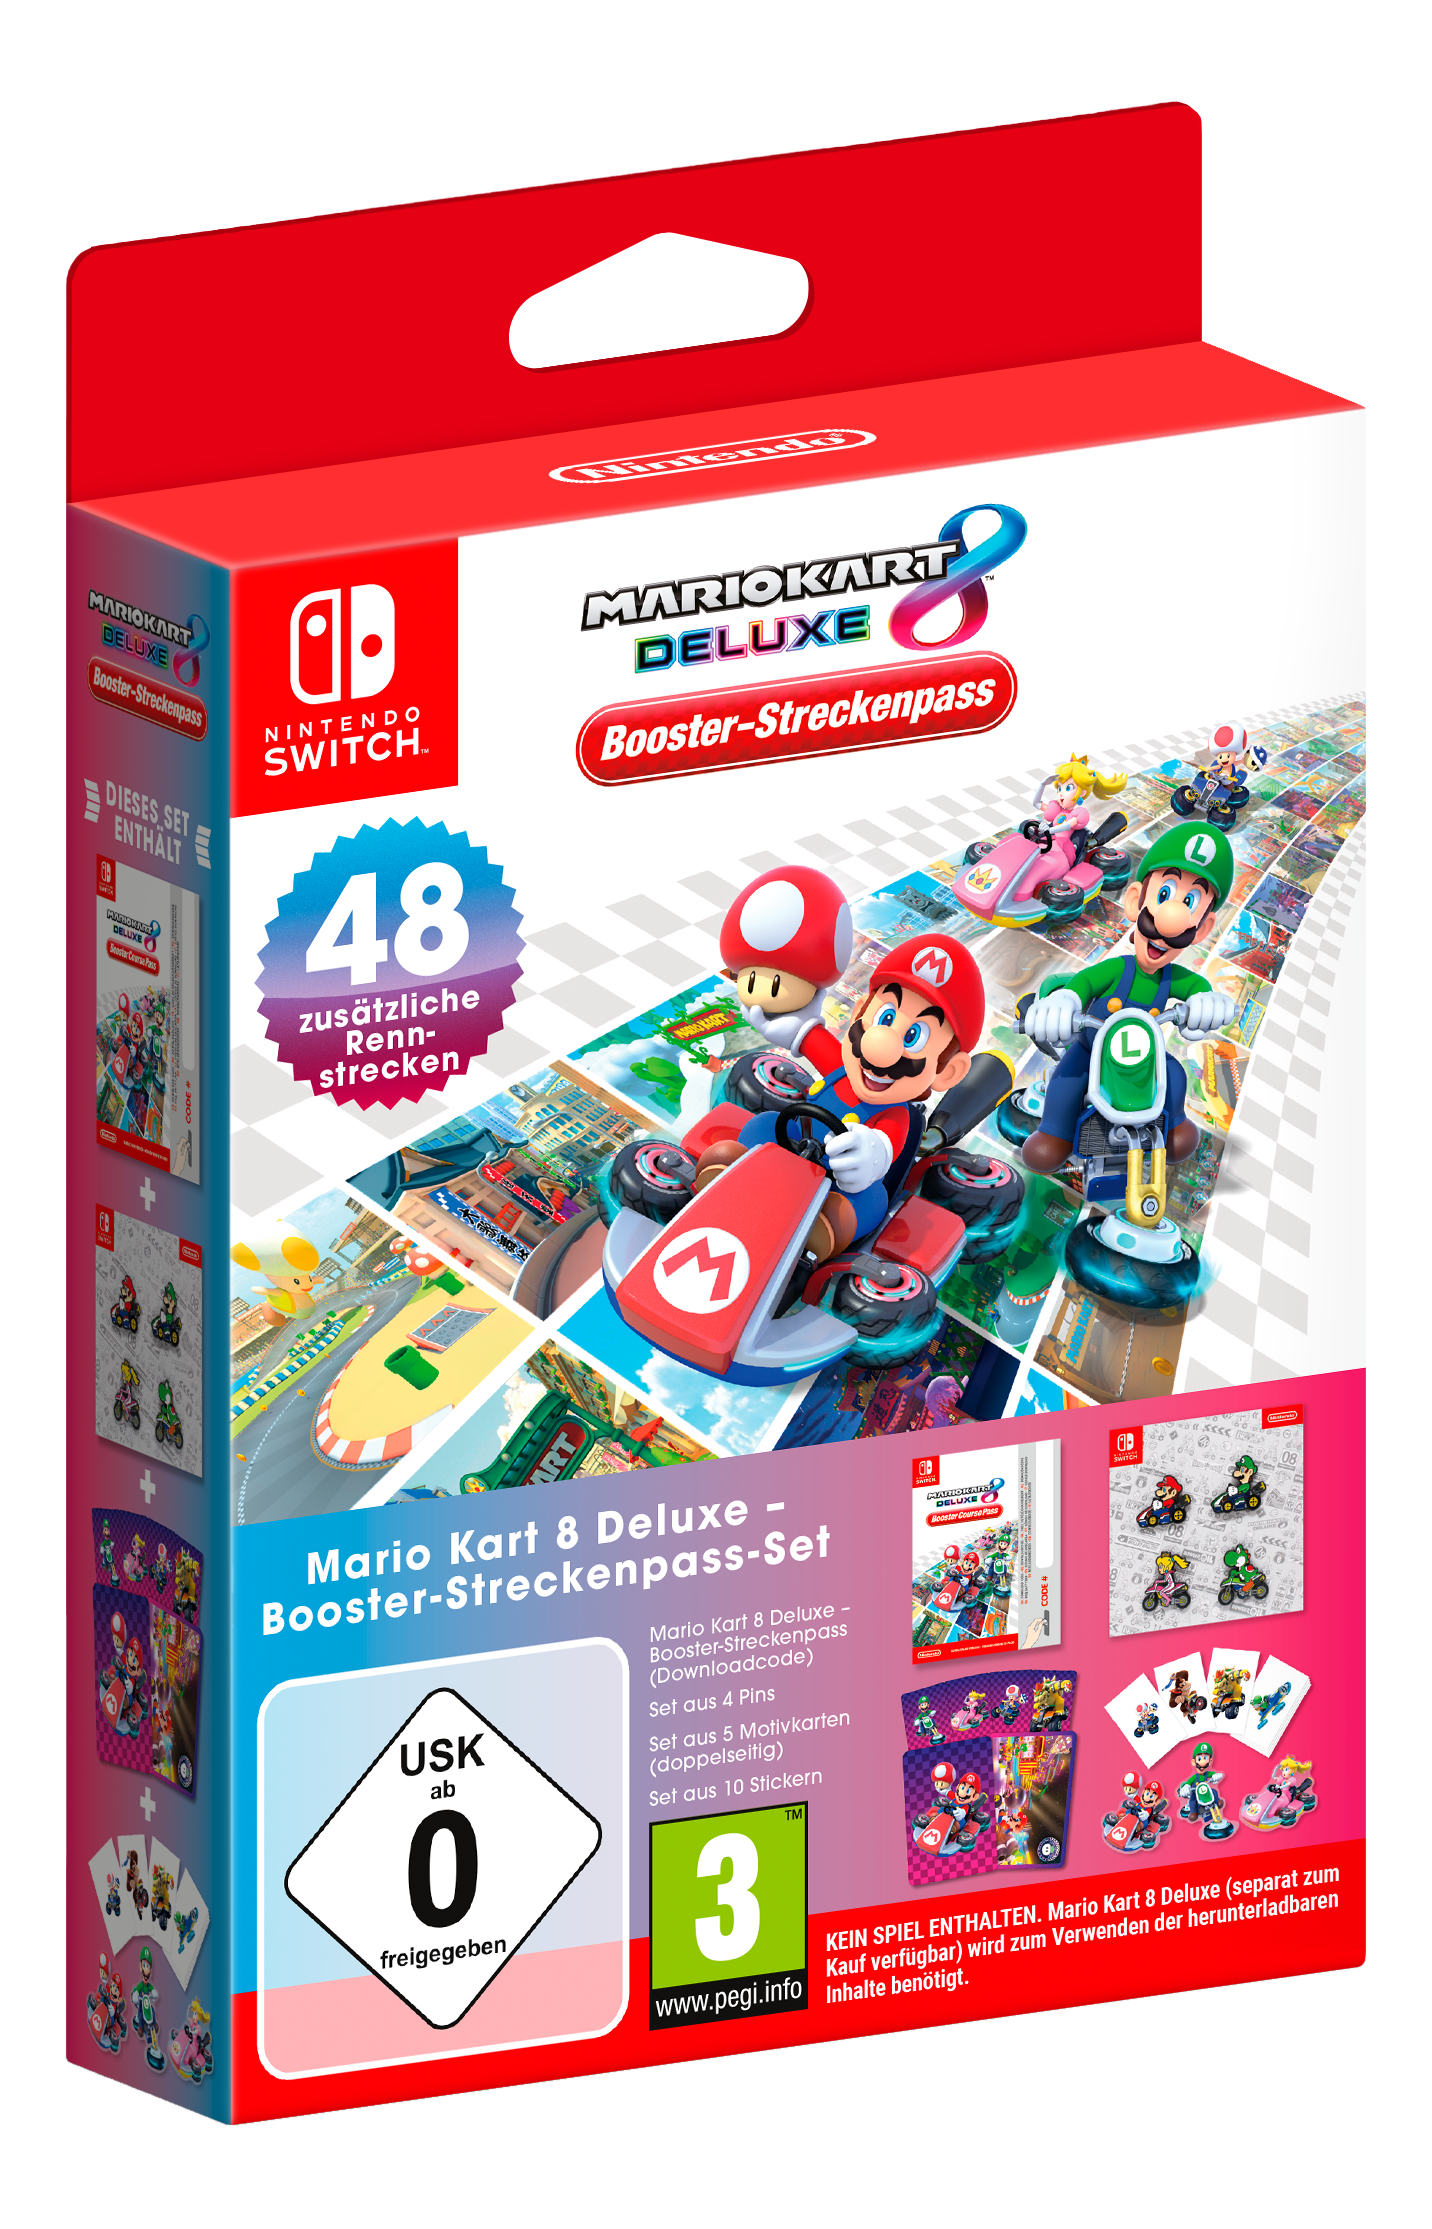 Mario Kart 8 Deluxe: Booster-Streckenpass-Set (Add-On) - Nintendo Switch - Deutsch